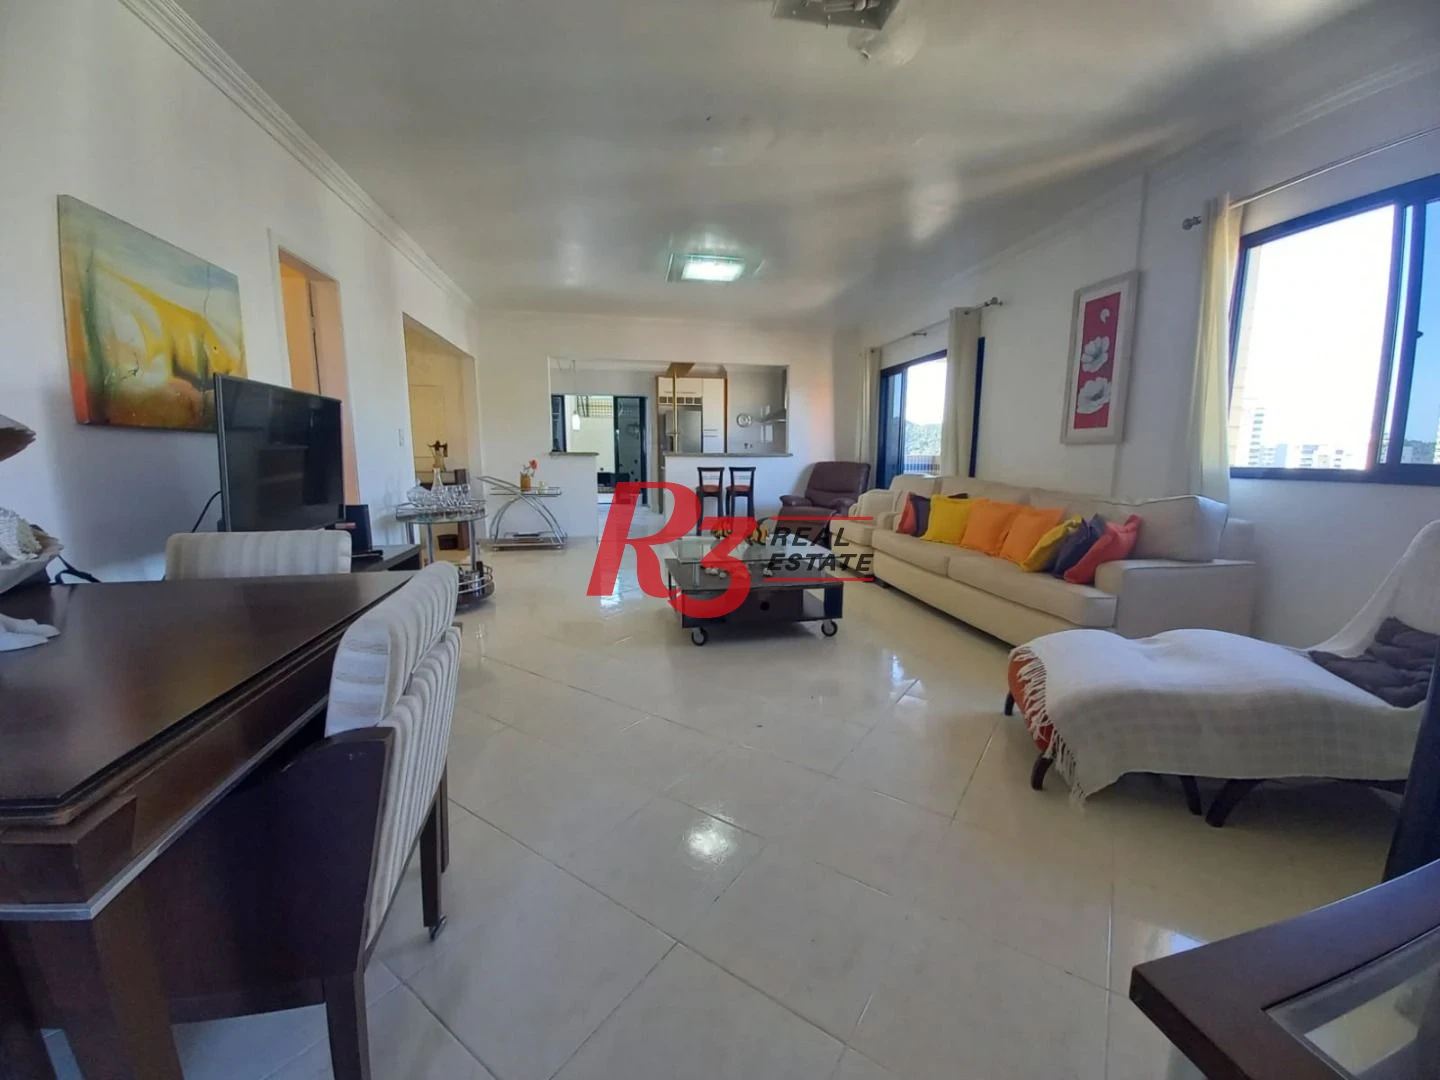 Cobertura Duplex com 4 dormitórios à venda, 300 m² por R$ 1.900.000 - Canto do Forte - Praia Grande/SP